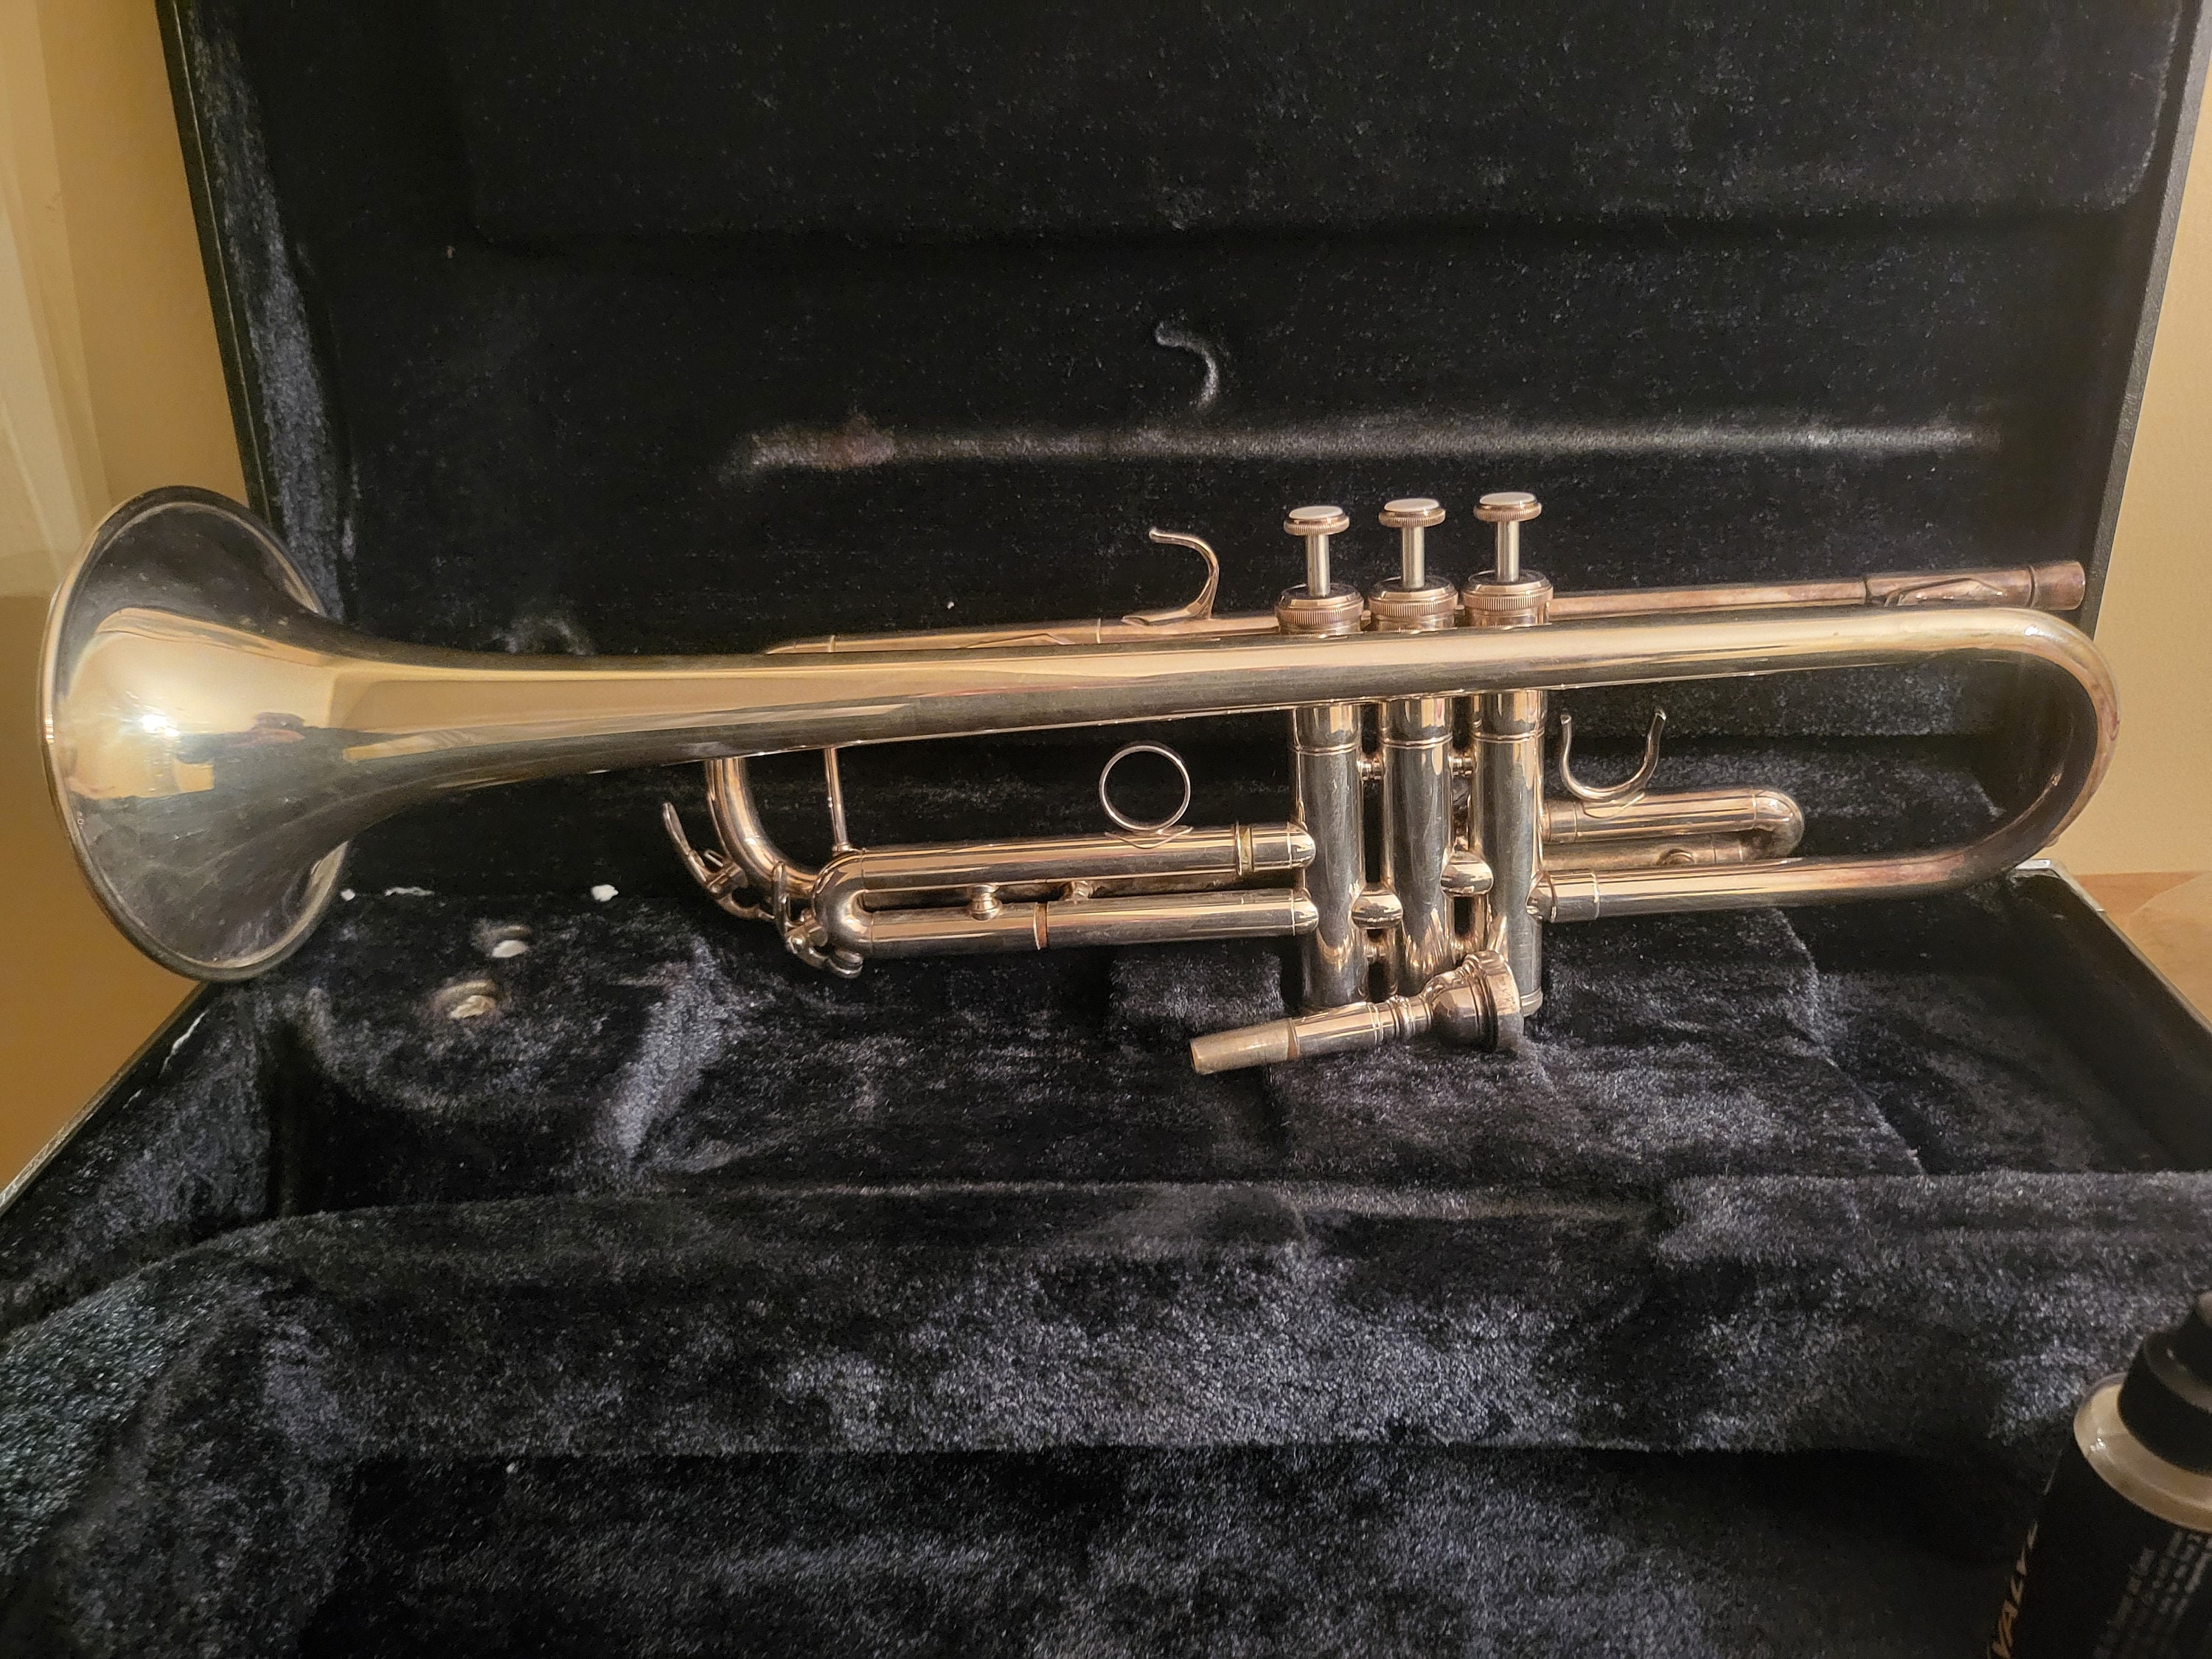 Shinny Brass Vintage Trumpet Pocket Bugle Horn 3 Valve Mouthpiece